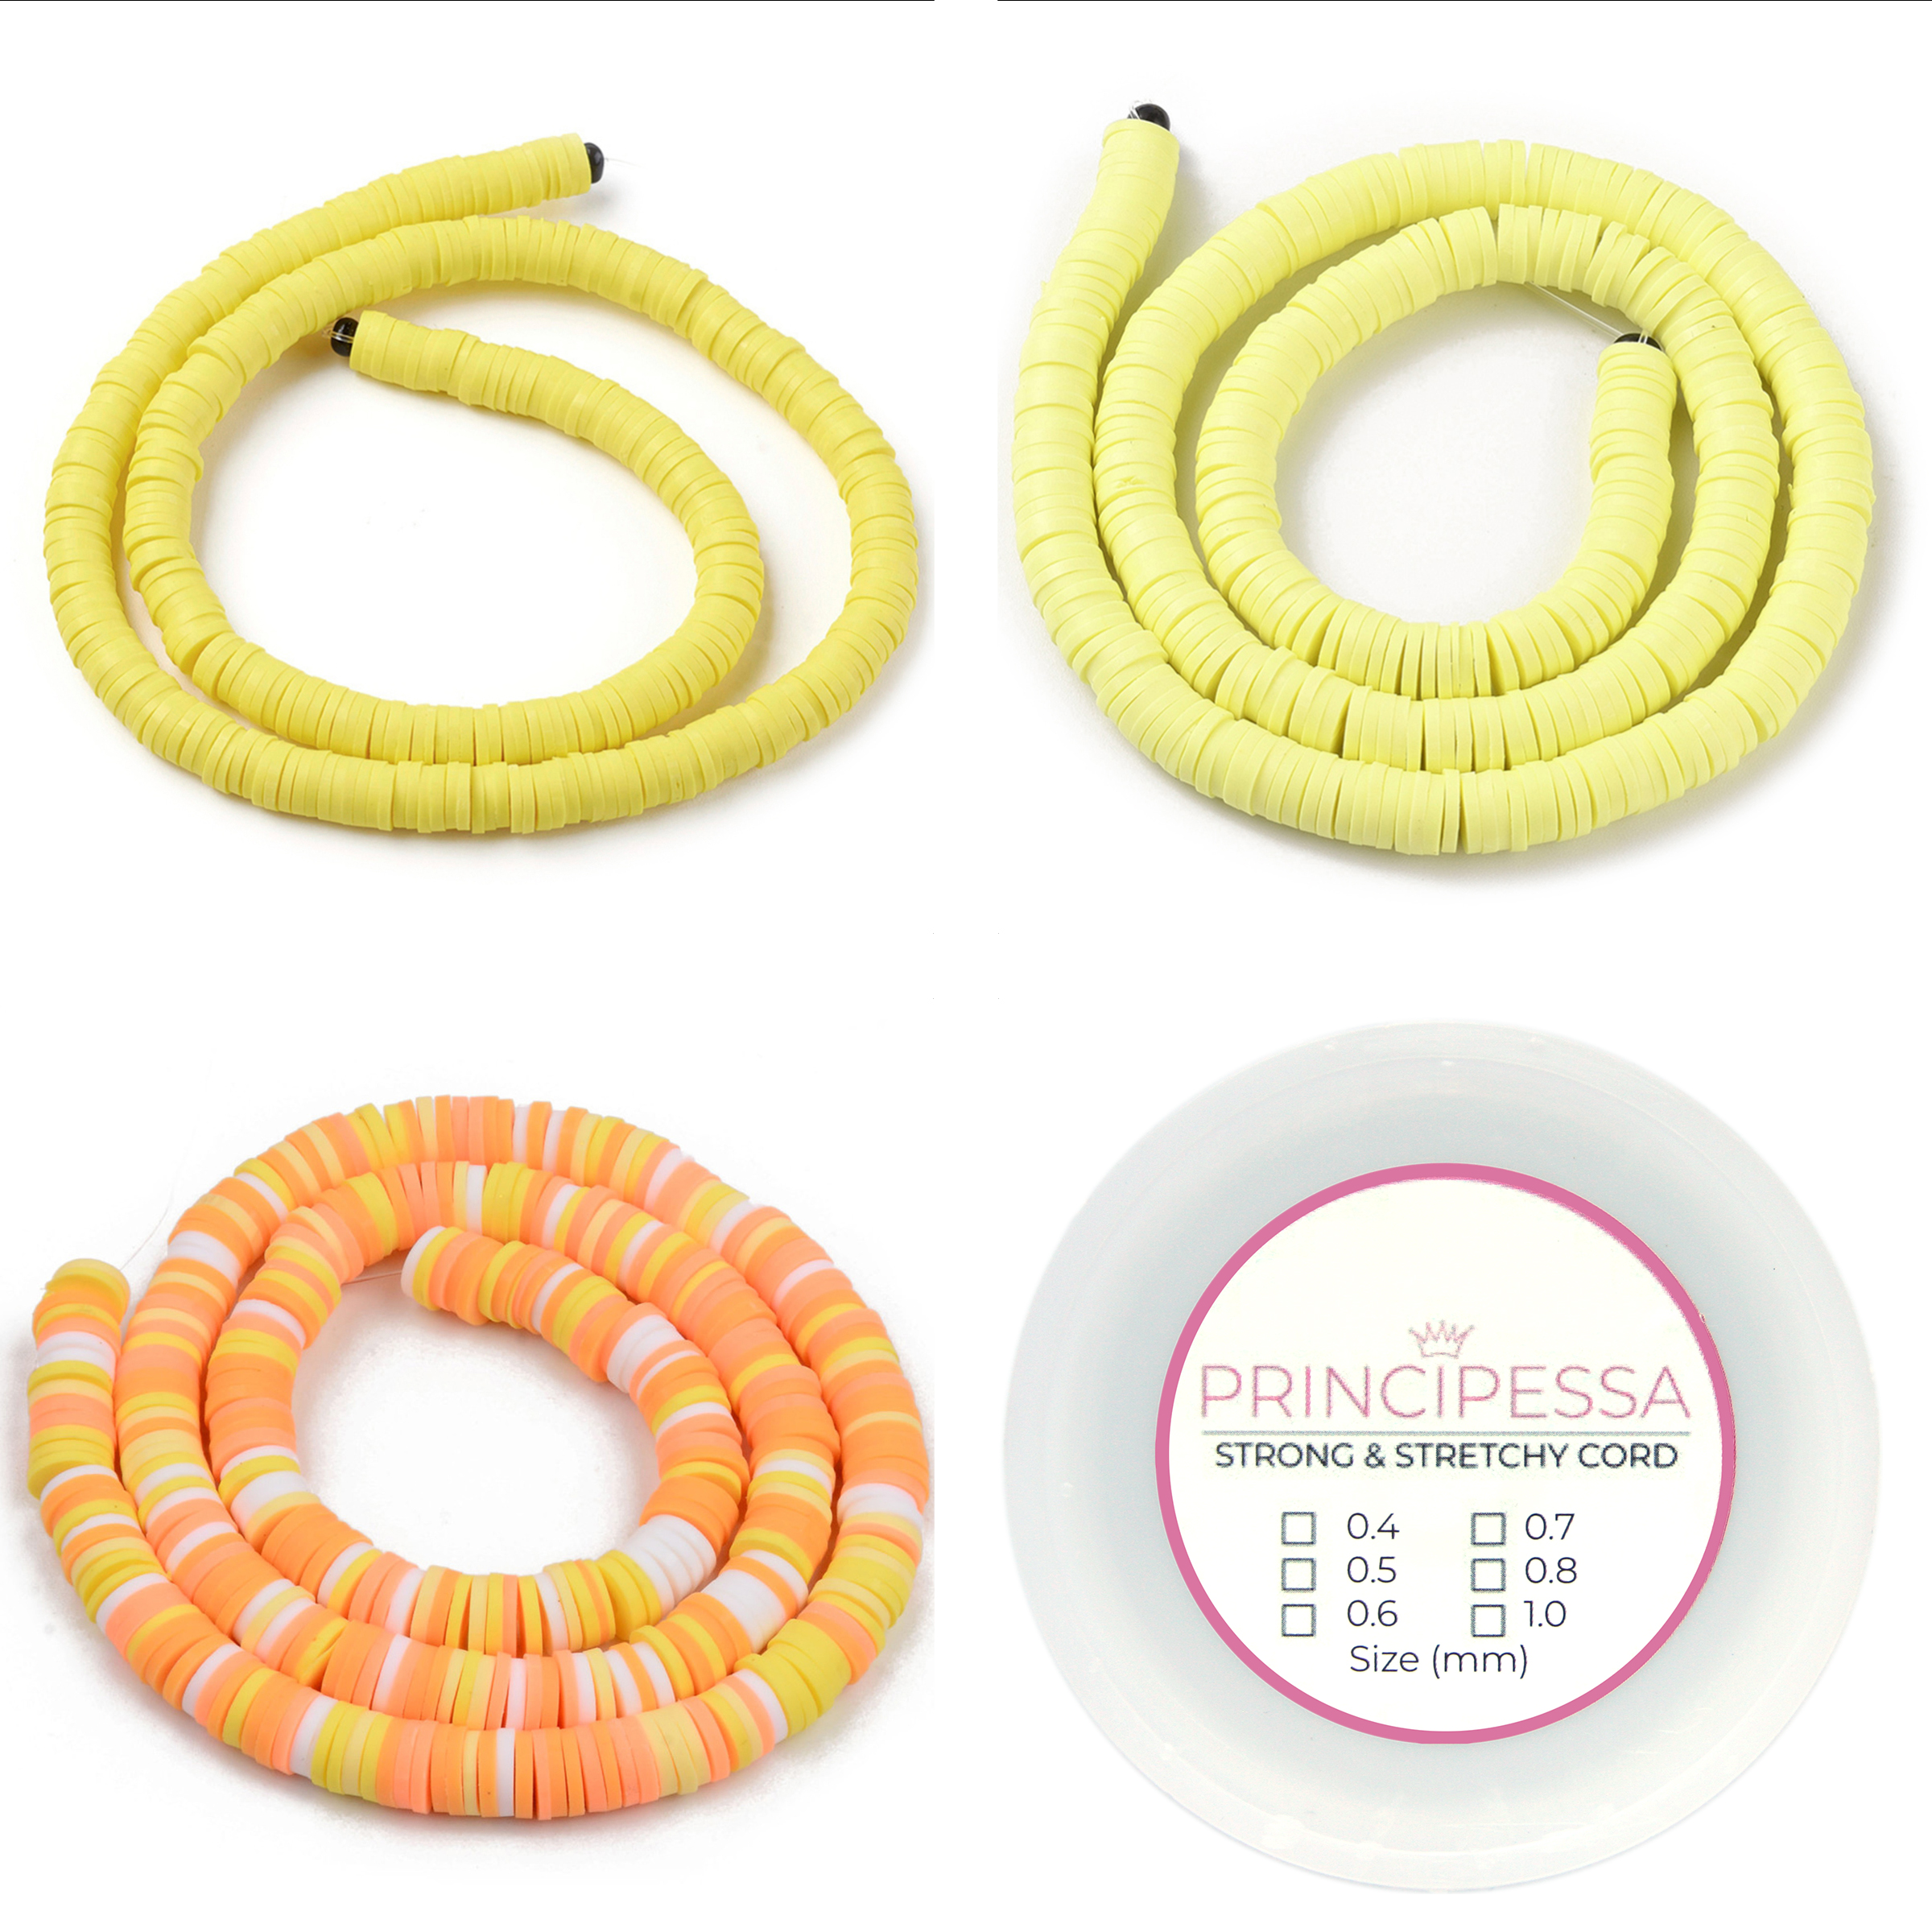 Principessa Katsuki kralen met rol elastiek – Maisgeel, Geel, Geel/Oranje-mix – 1.150 kralen – Polymeer klei – 6mm kralen